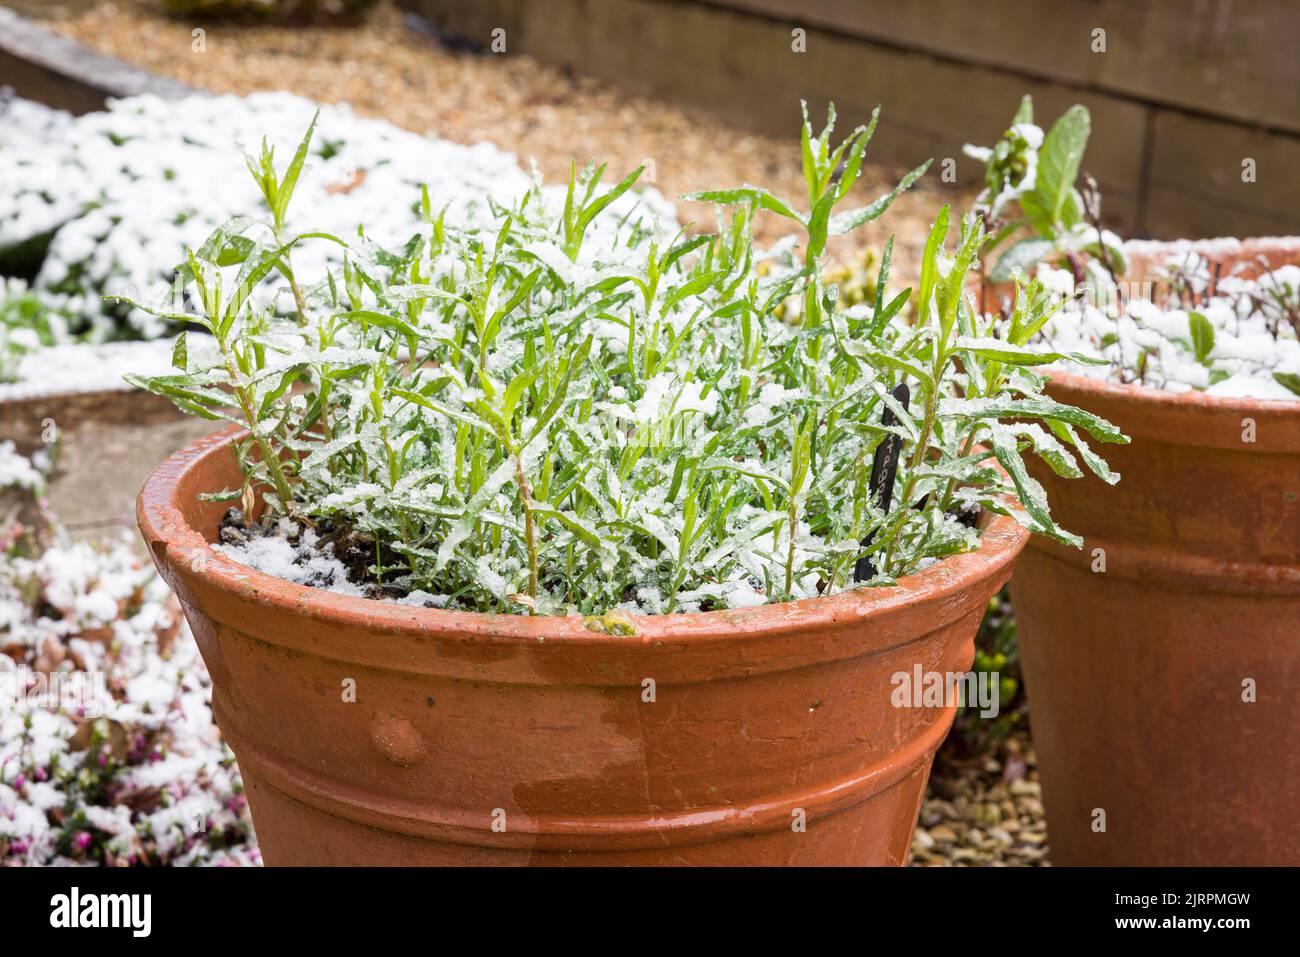 Hierba de estragón francés (artemisia dracunculus) en una planta de terracota a finales del invierno o principios de la primavera, cubierta de nieve en un jardín británico Foto de stock